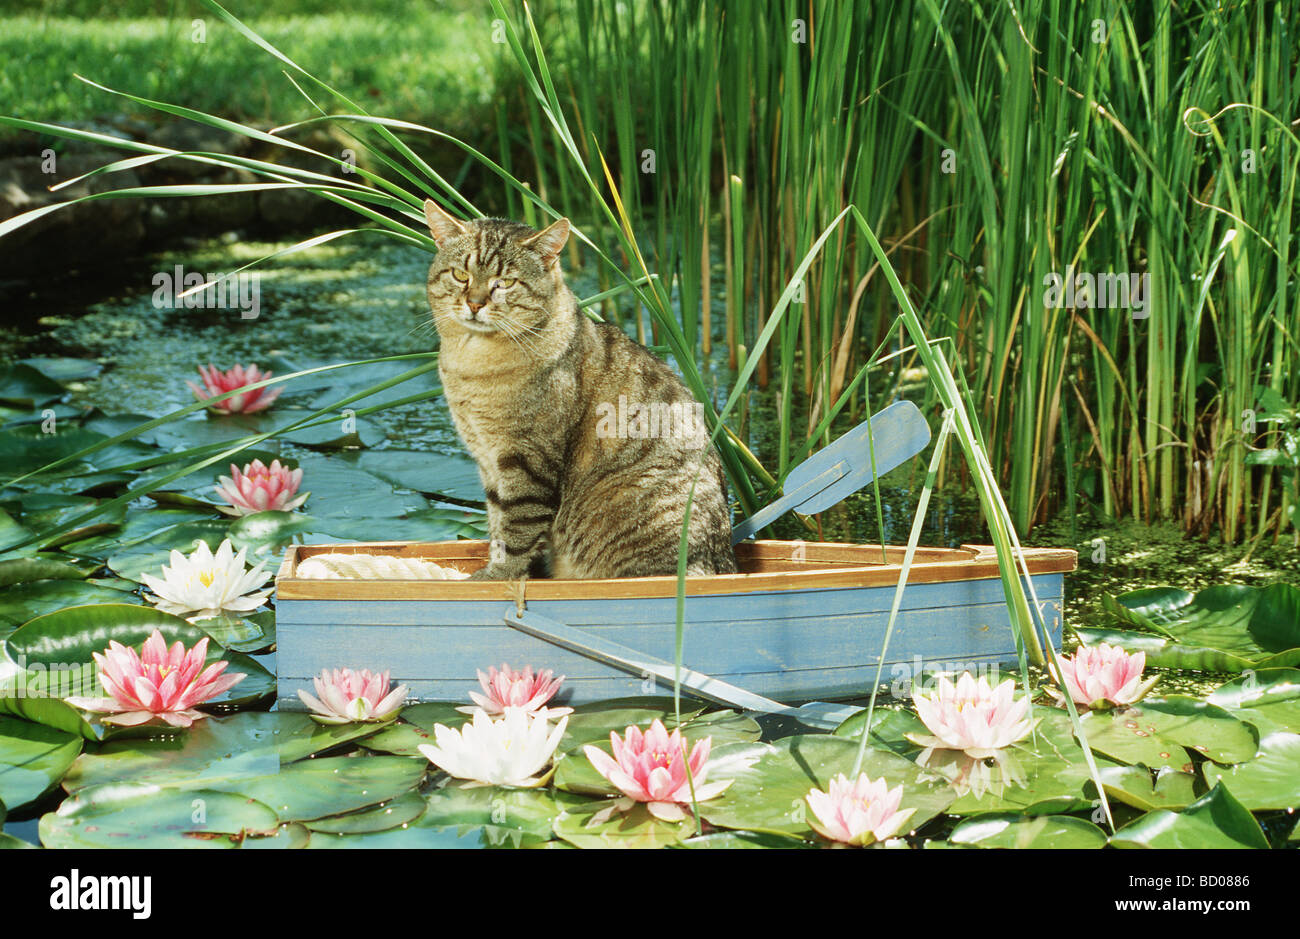 Les no de cat. Tabby assis dans un adultes bateau à rames Banque D'Images